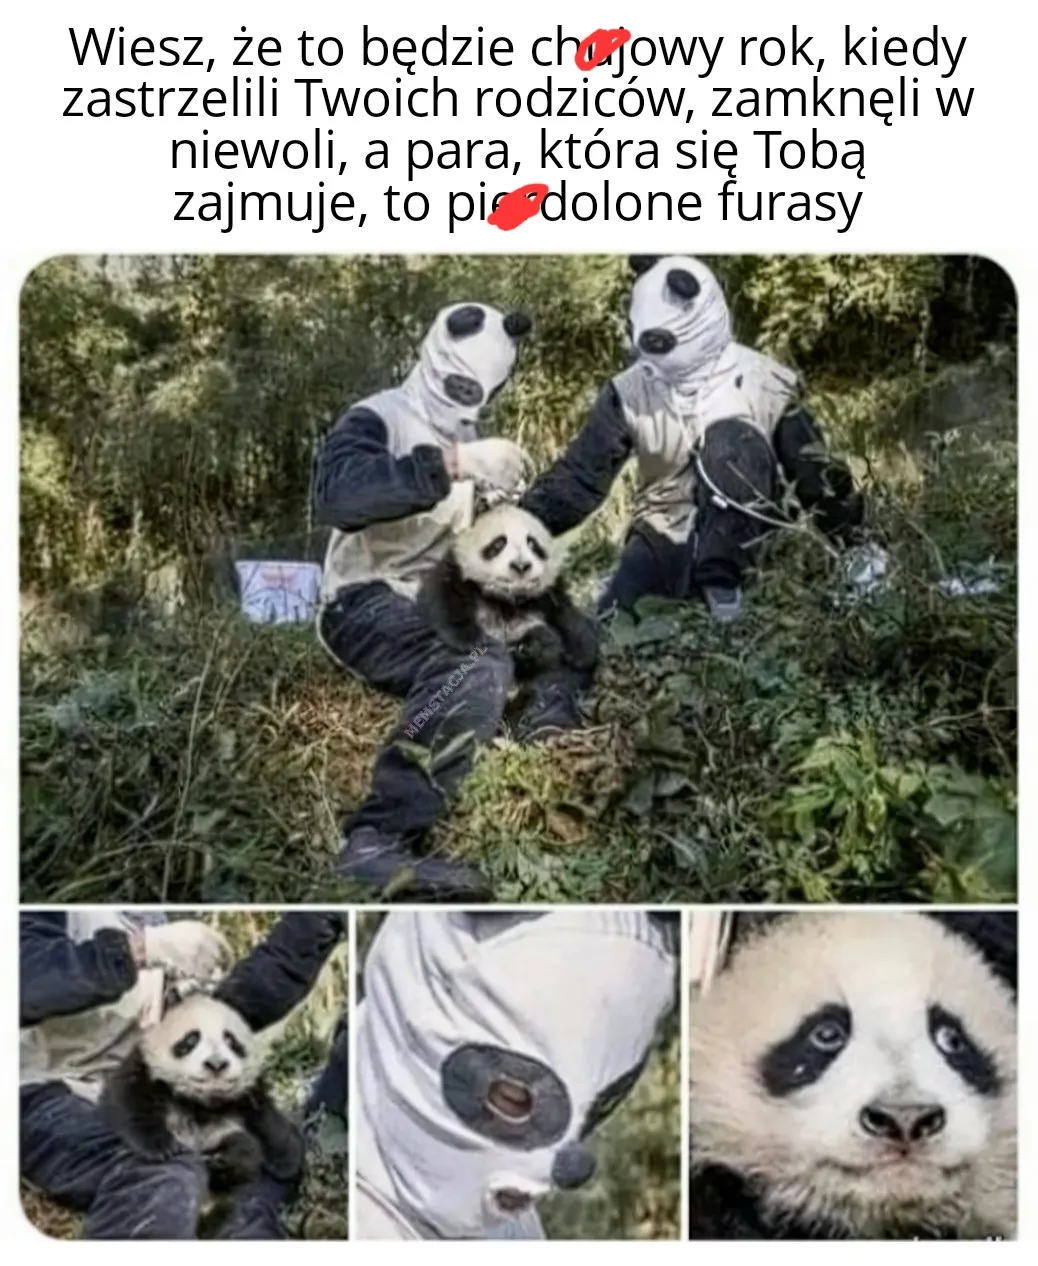 Zdjęcie zwierzęcia pandy i ludzi przebranych za pandy: 'Wiesz, że to będzie ch*jowy rok, kiedy zastrzelili Twoich rodziców, zamknęli w niewoli, a para, która się Tobą zajmuje, to pierdolone furasy'